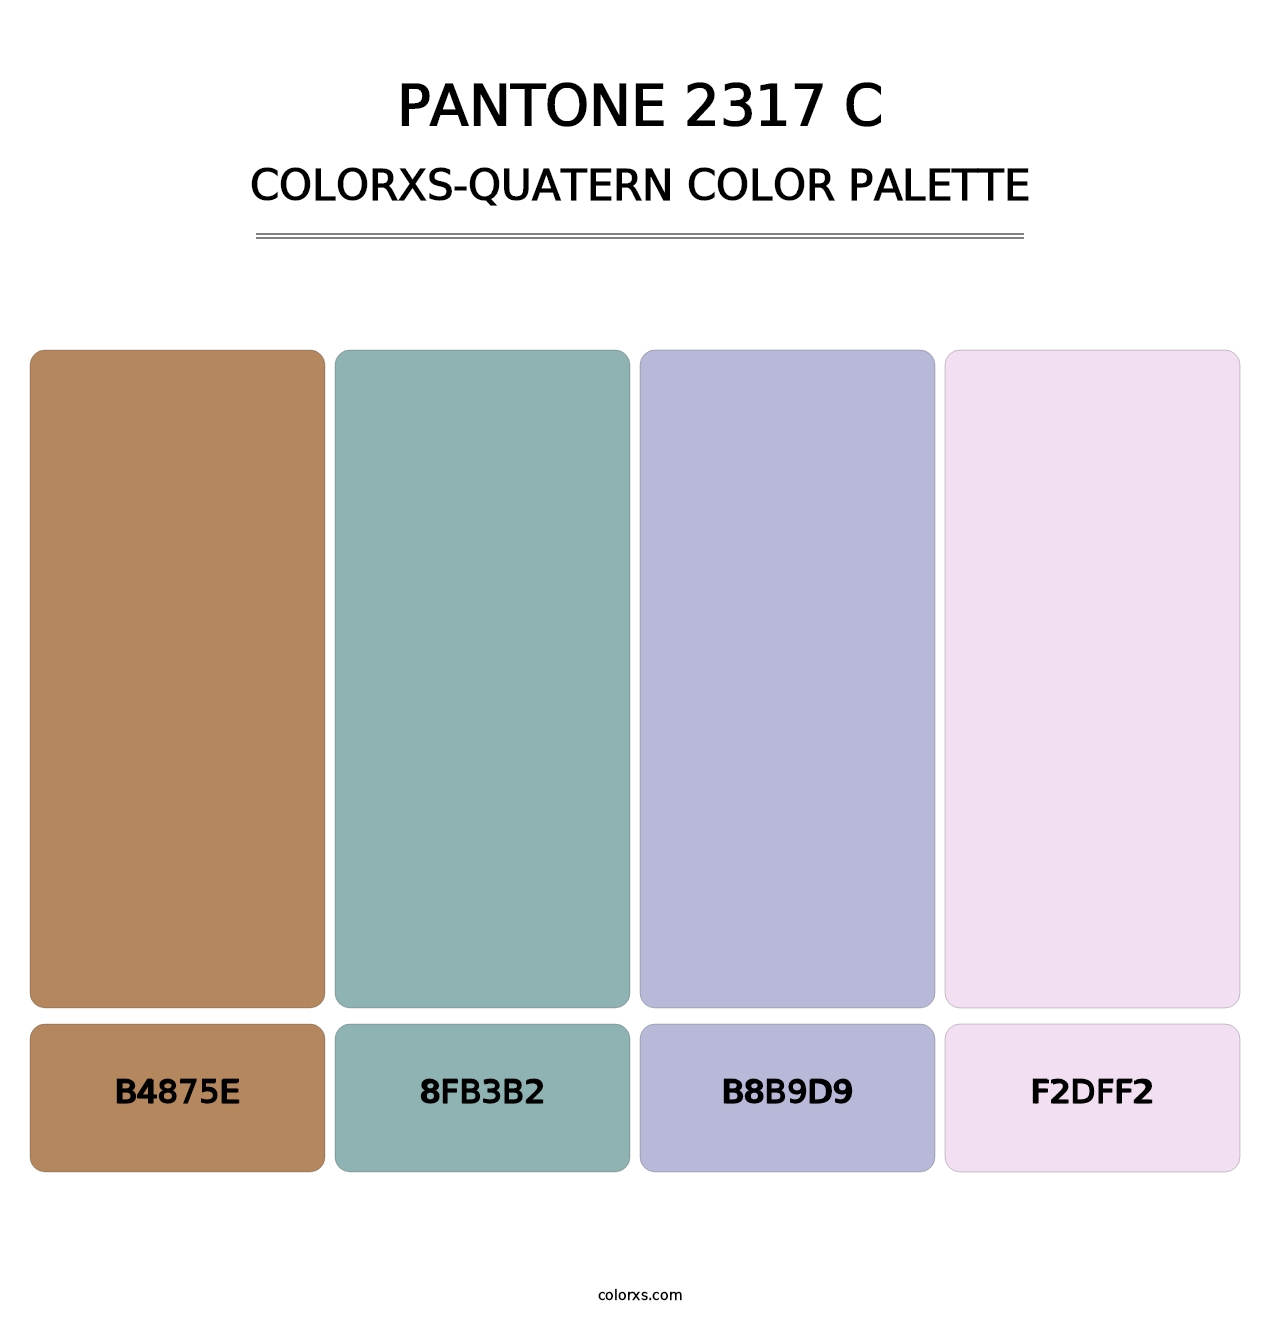 PANTONE 2317 C - Colorxs Quatern Palette